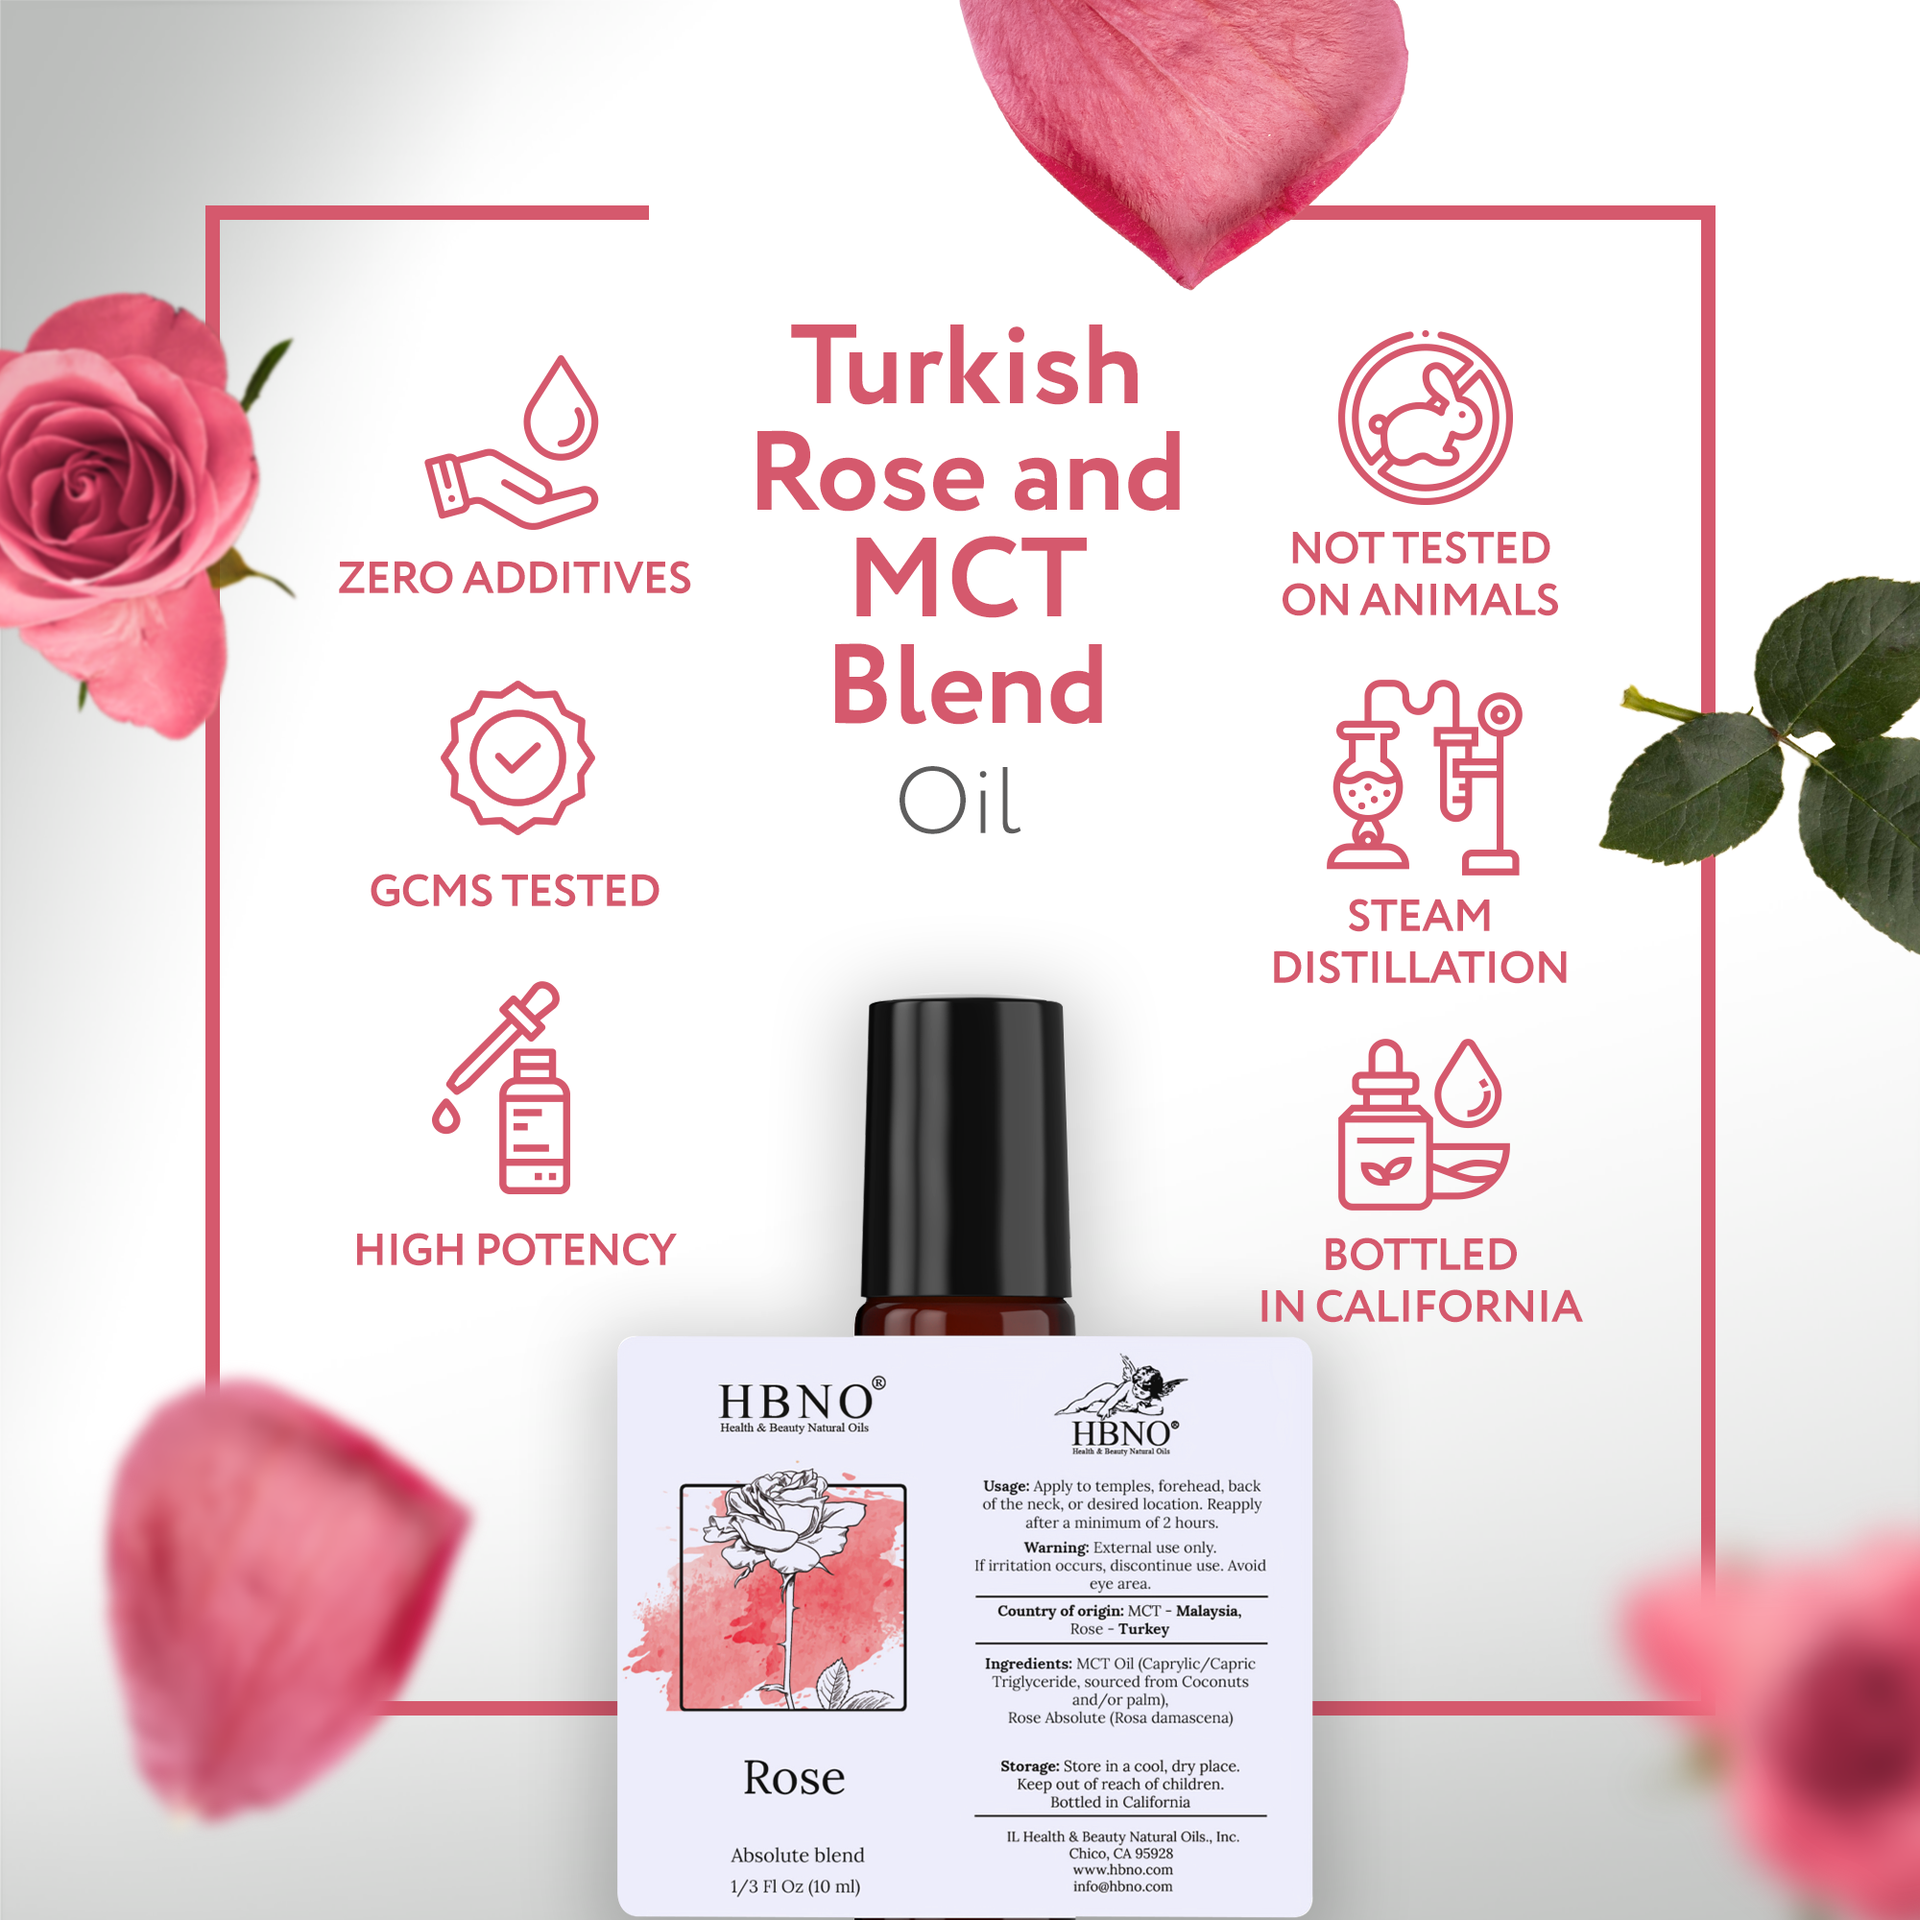 Turkish Rose /MCT